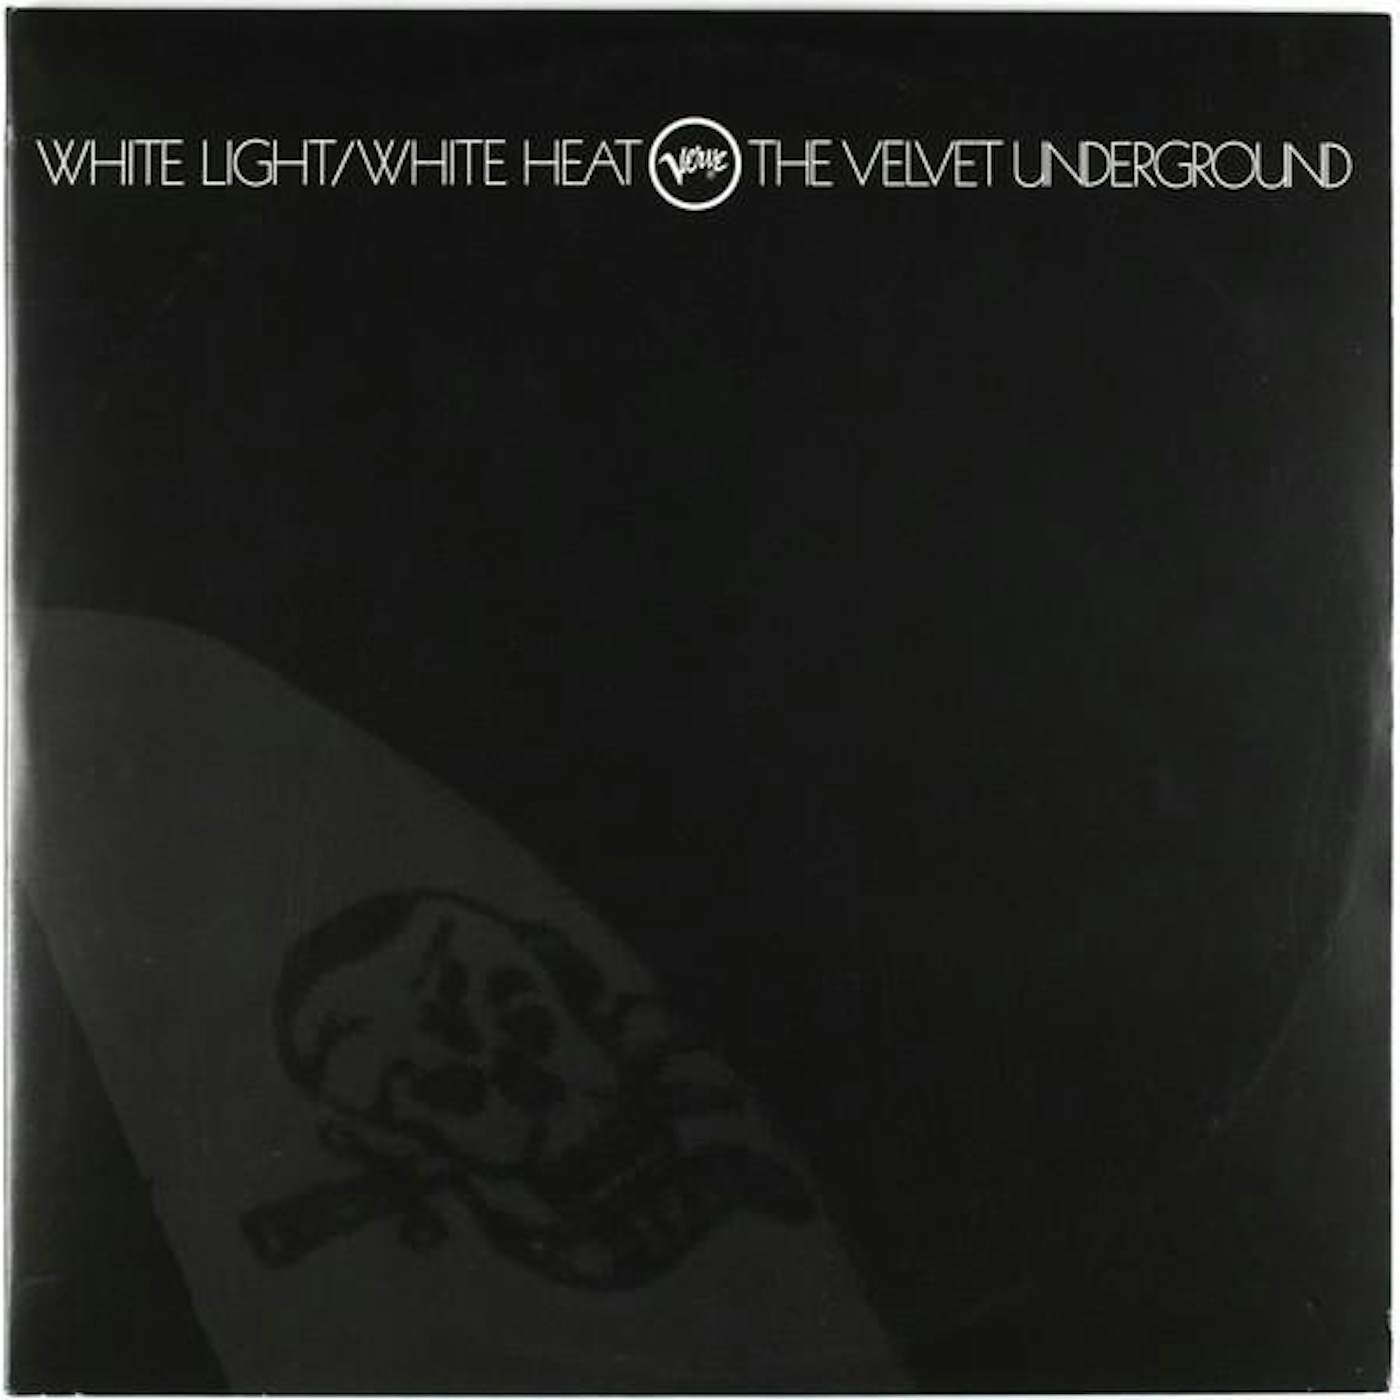 The Velvet Underground WHITE LIGHT / WHITE HEAT Vinyl Record